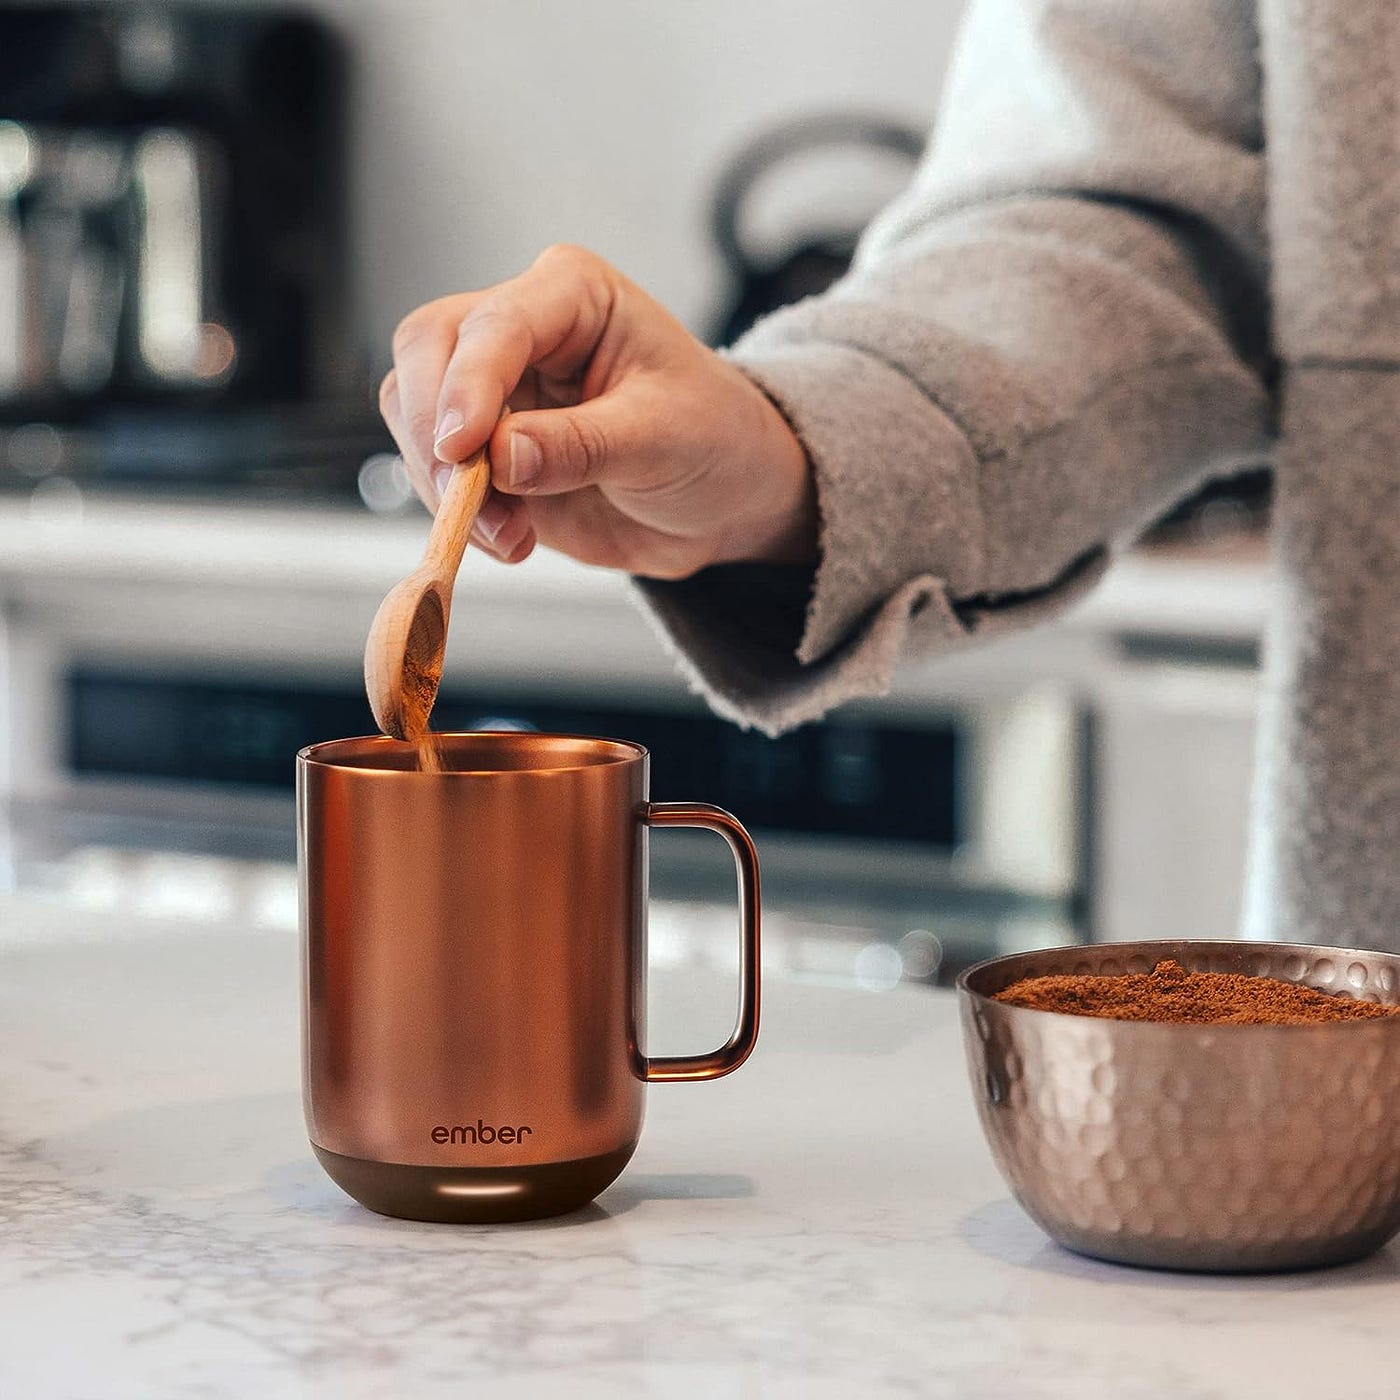 How Long Do Various Mugs Keep Coffee Hot? Muggo, Ember, Contigo